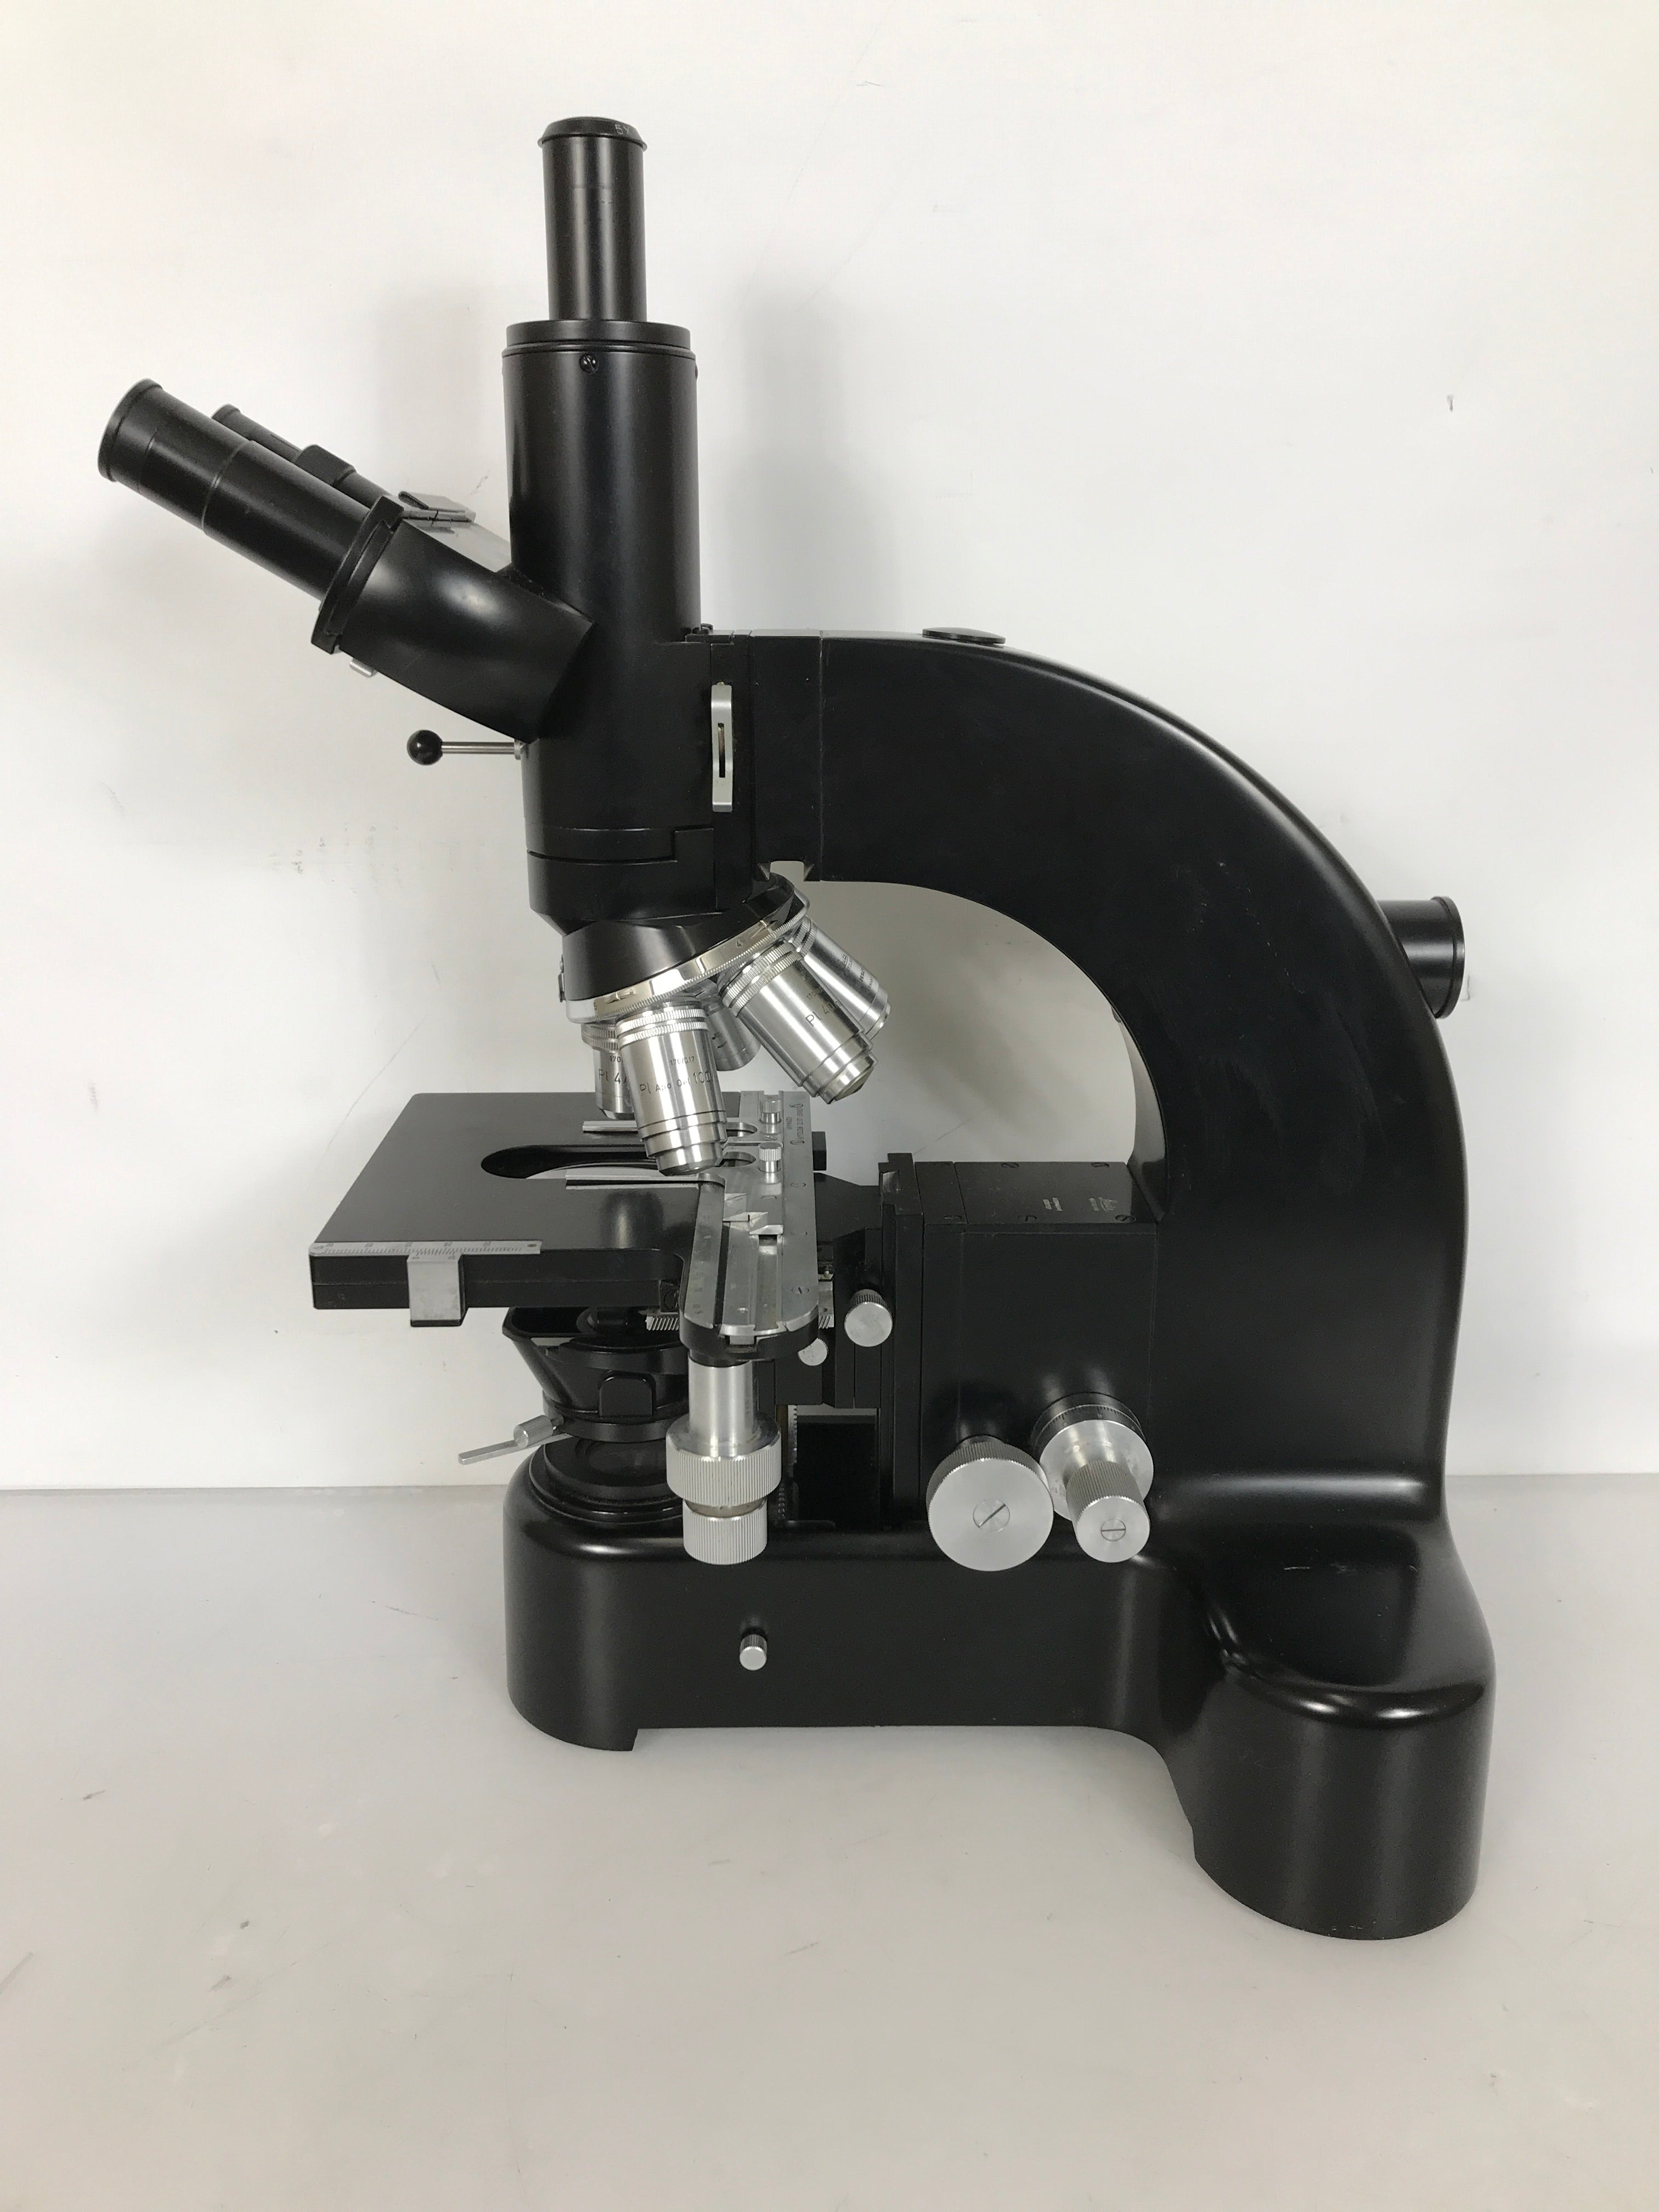 Leitz Wetzlar Ortholux Trinocular Microscope w/ 5 Objectives Germany